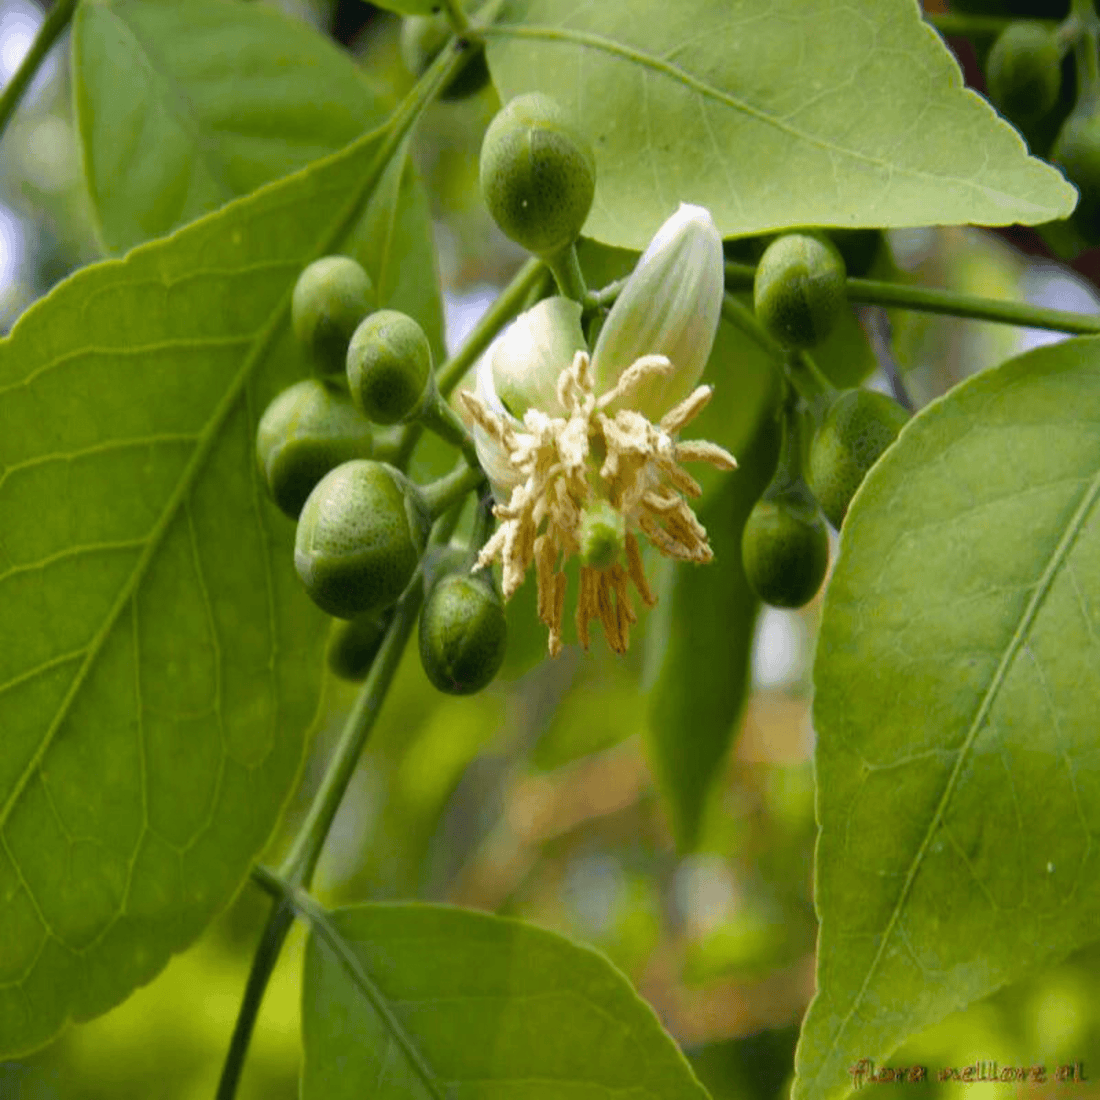 Bael/Vilvam (Aegle marmelos) Fruit Live Plant